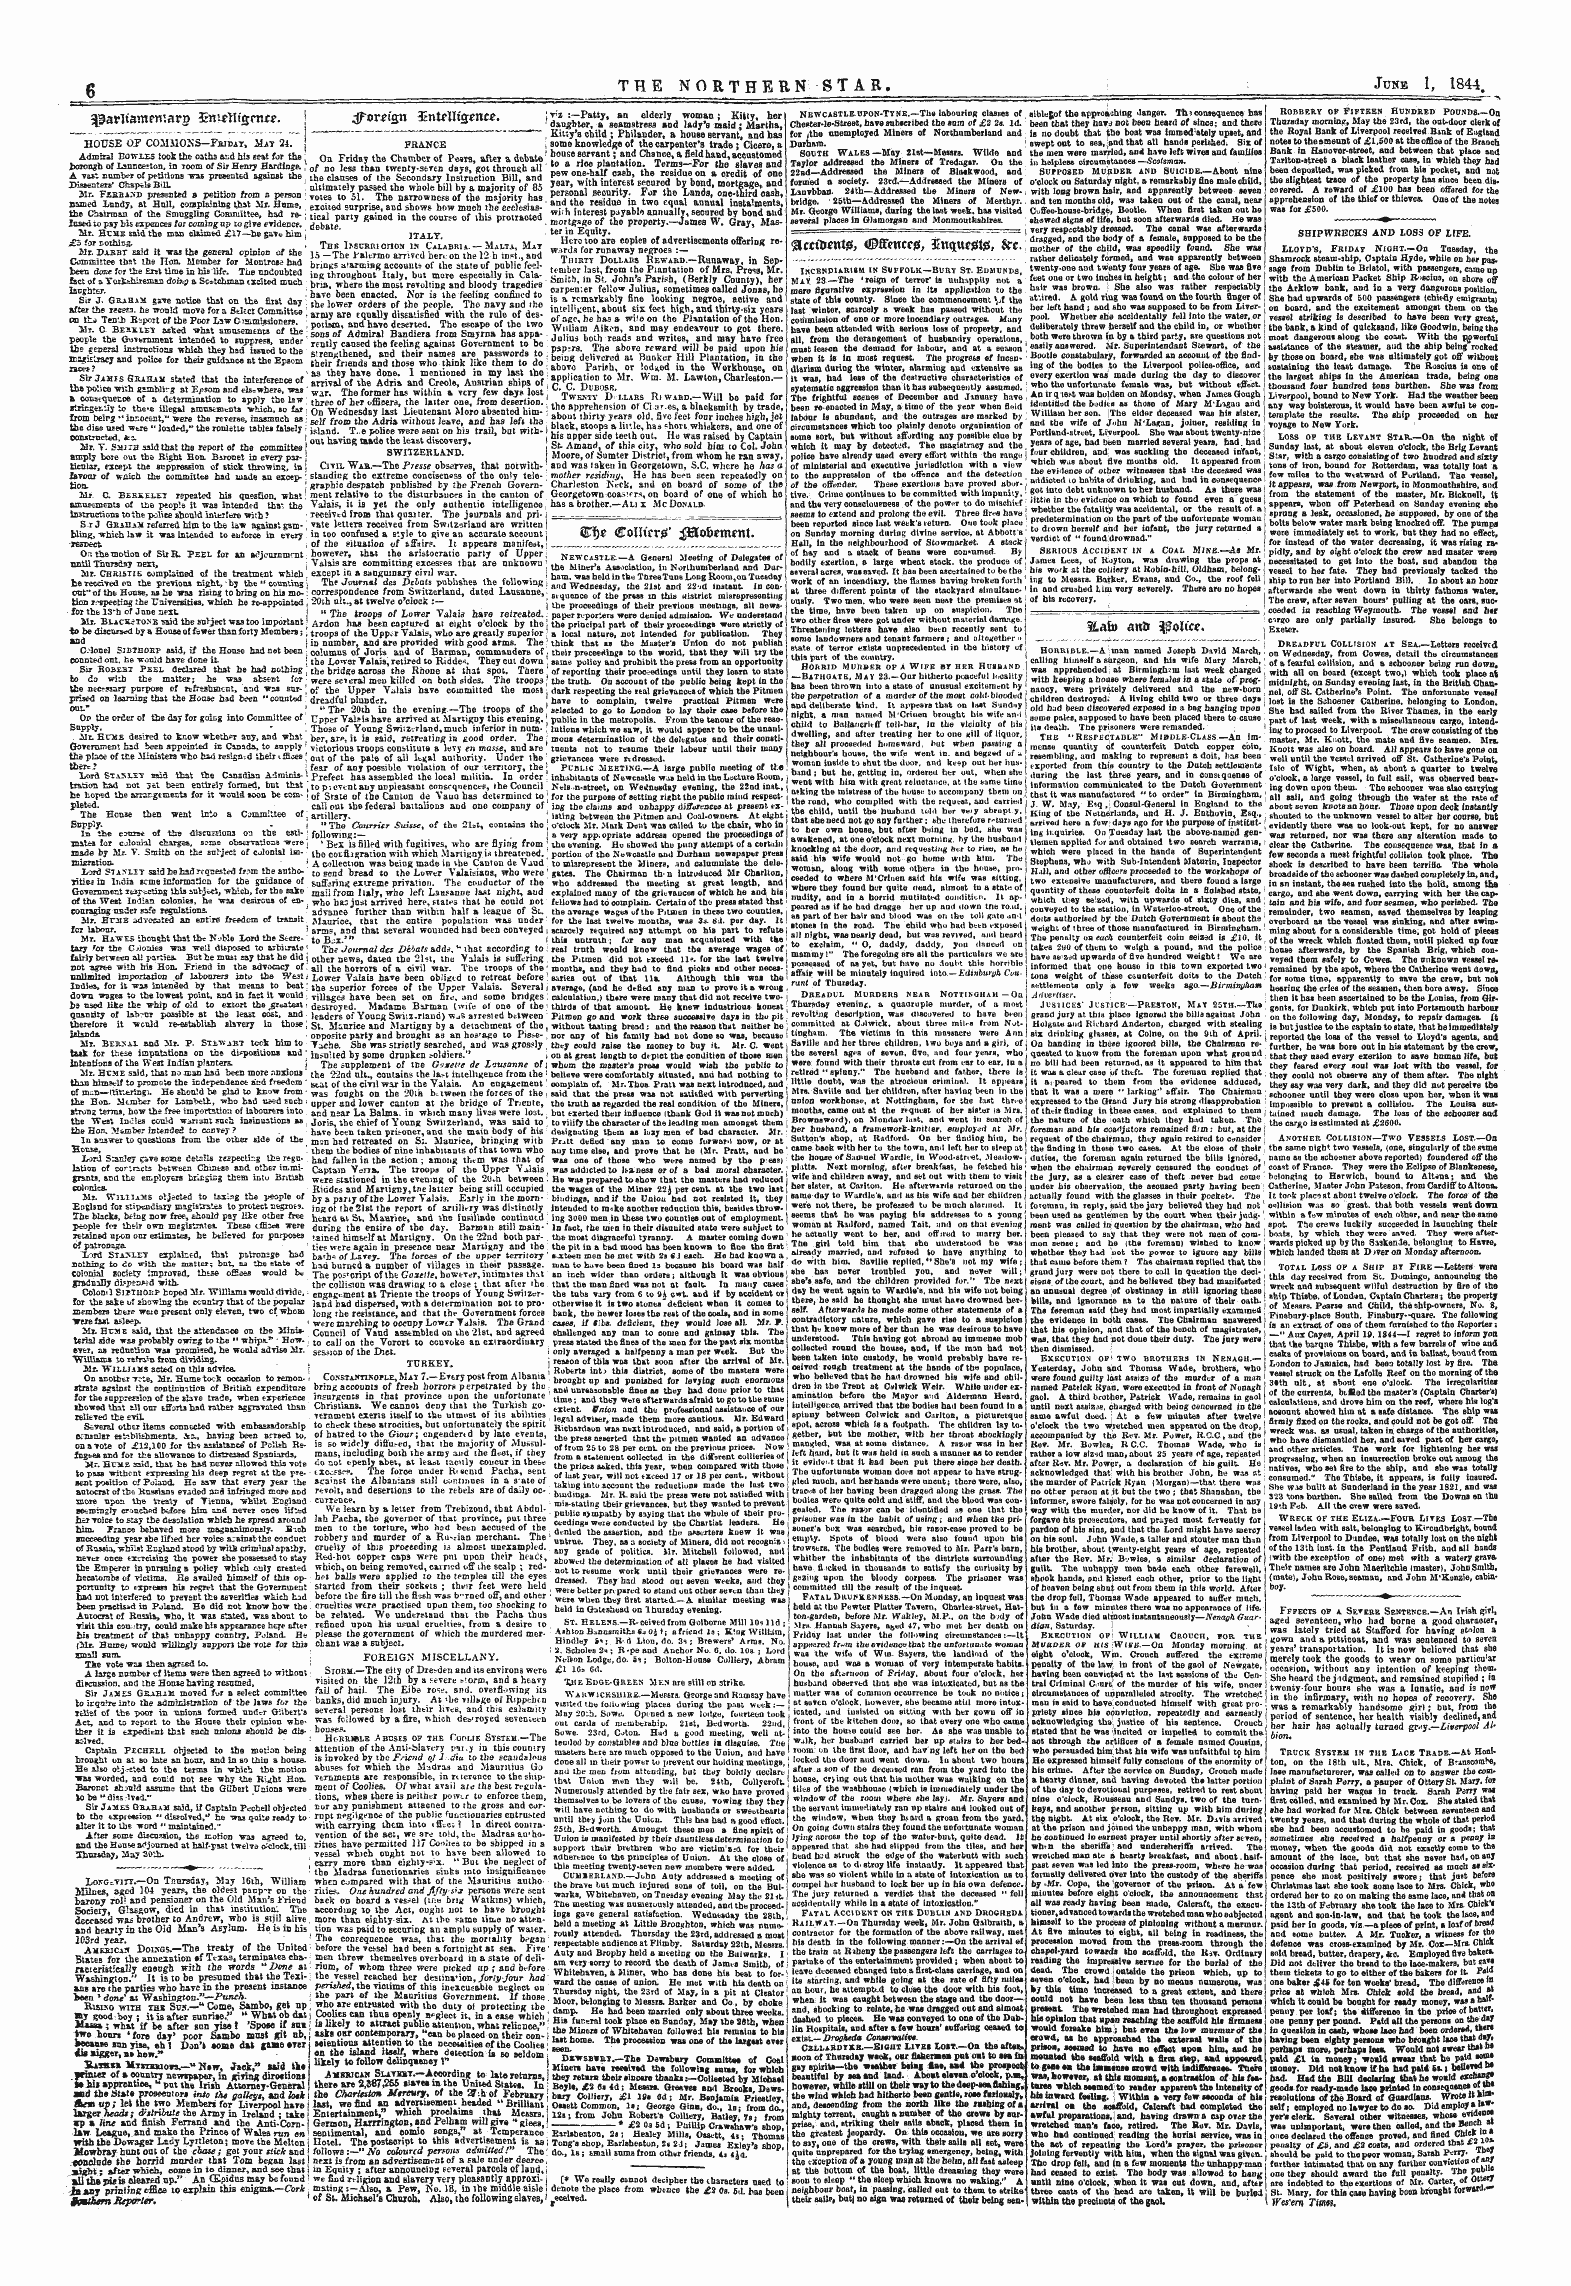 Northern Star (1837-1852): jS F Y, 1st edition - Jjiarttamemard 3mitl\I£Rnte.